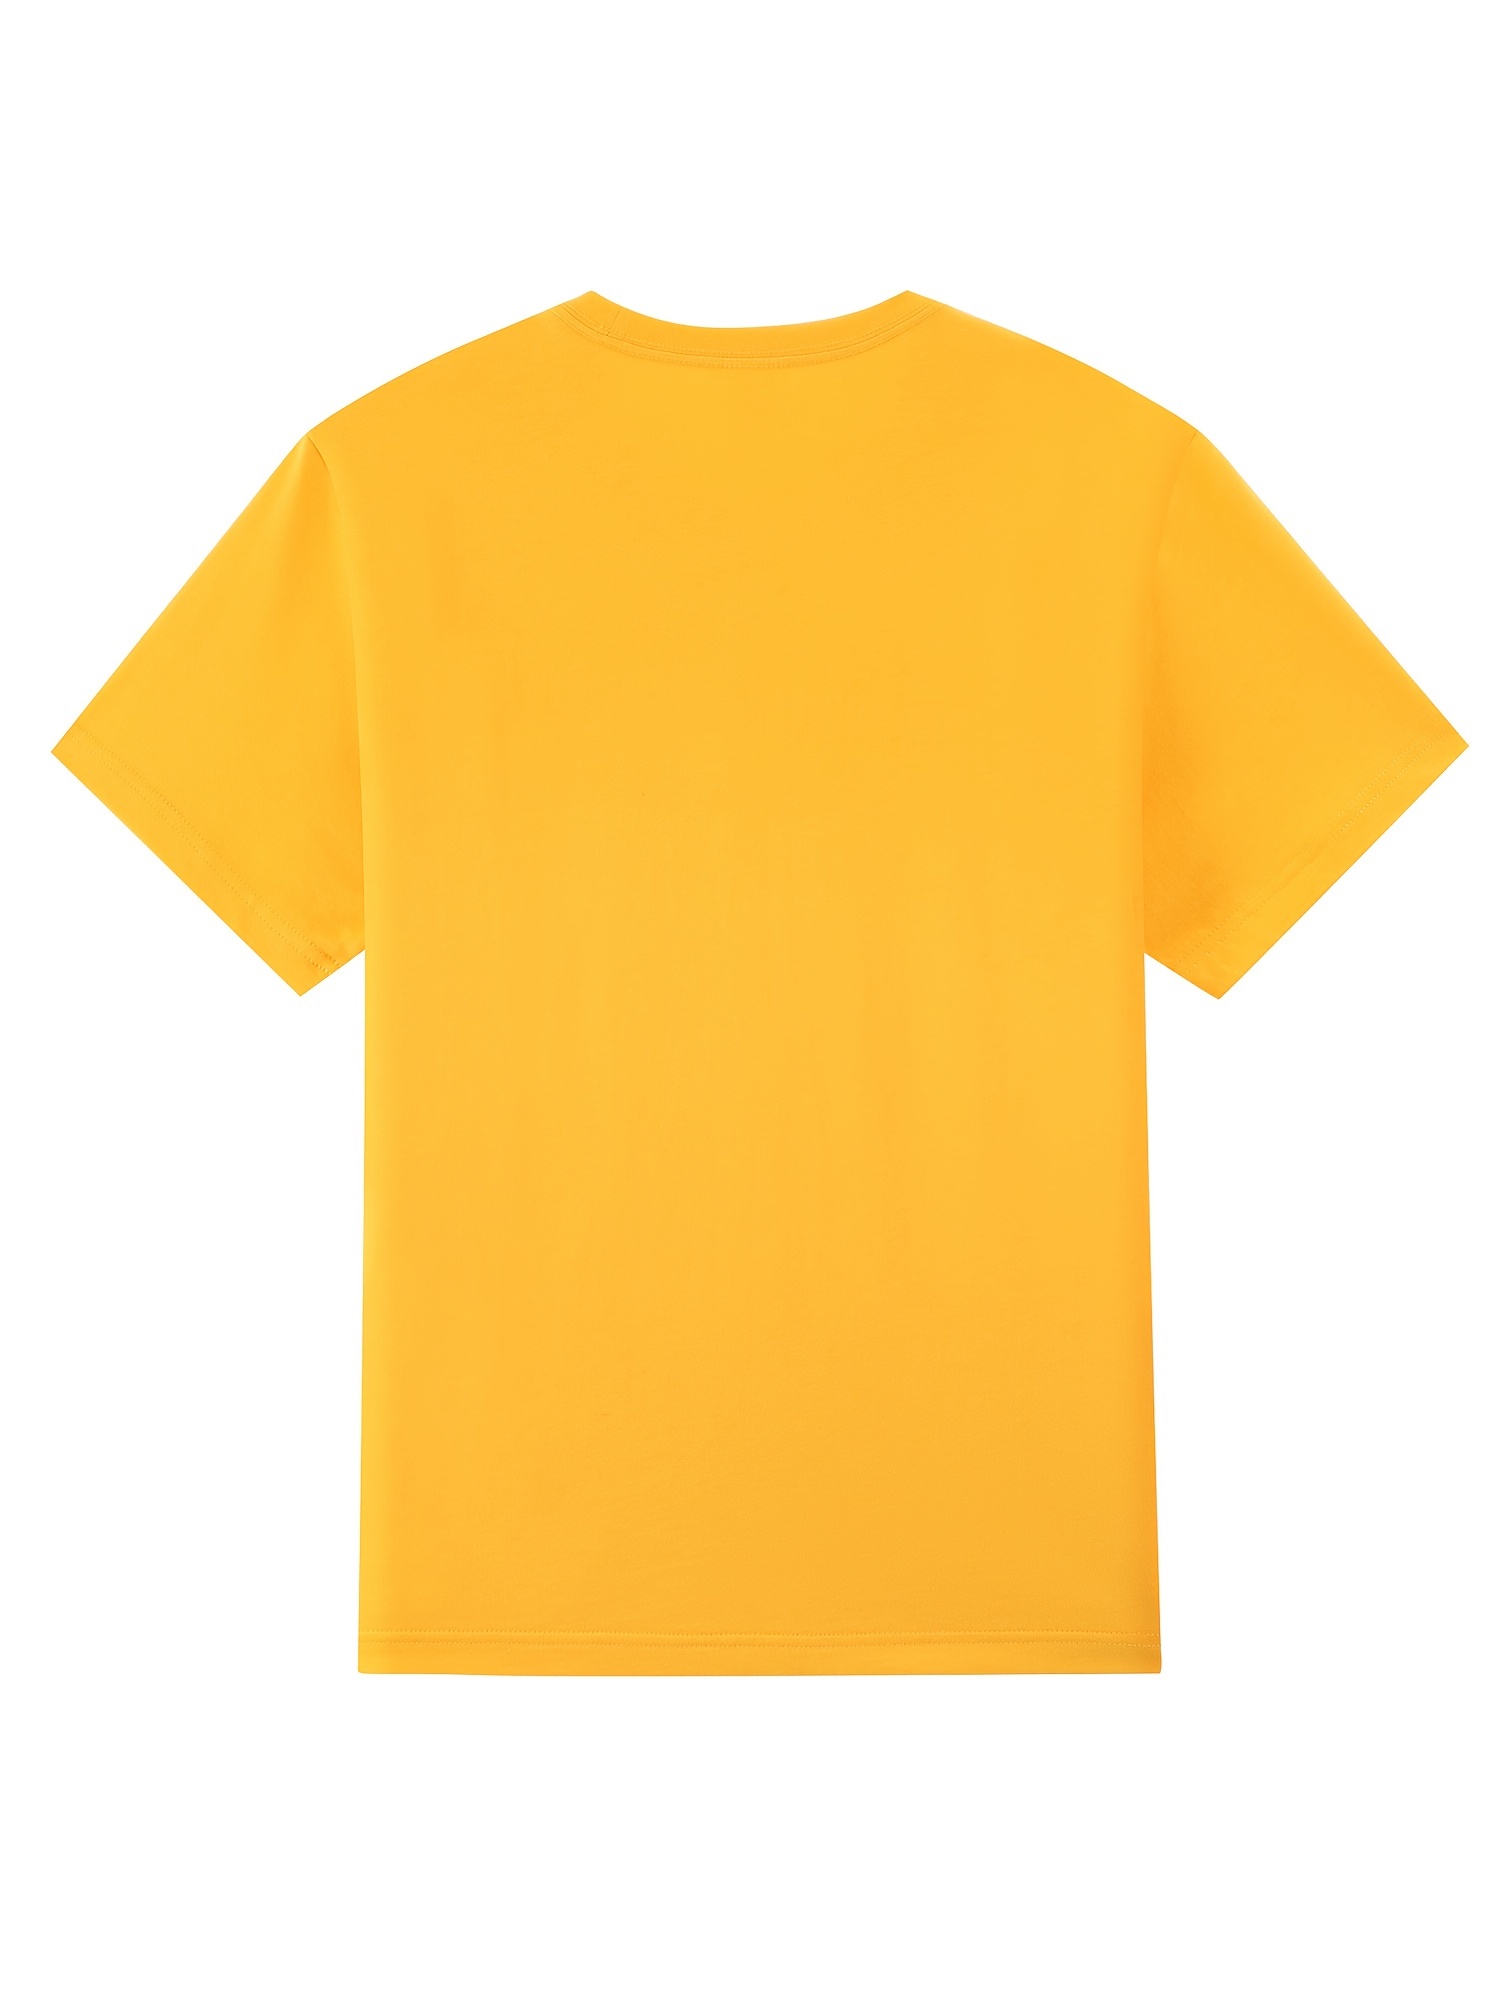 Camiseta algodón hombre naranja lisa cuello redondo